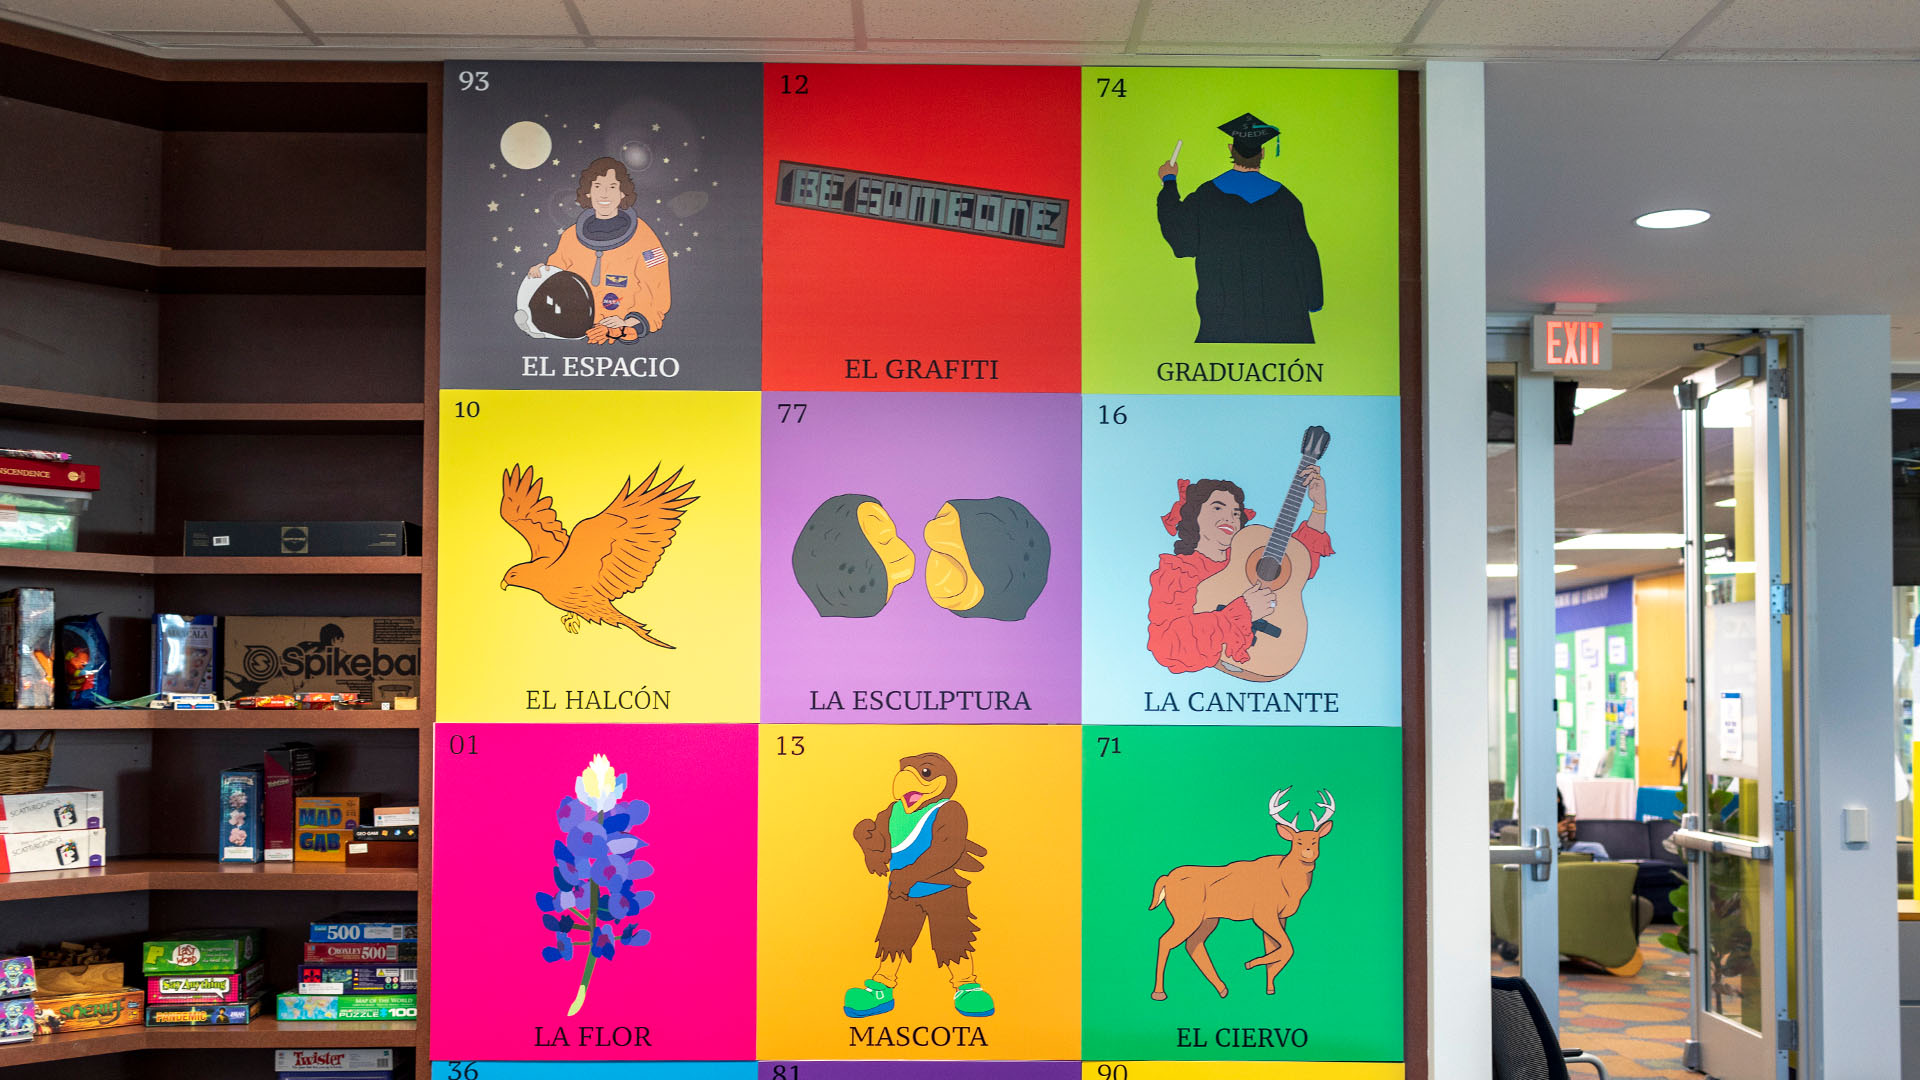 A brightly colored Loteria card, featuring figures and numbers for El Espacio, El Grafiti, Graduacion, El Hacon, El Esculptura, La Cantante, La Flor, Mascota, and El Ciervo